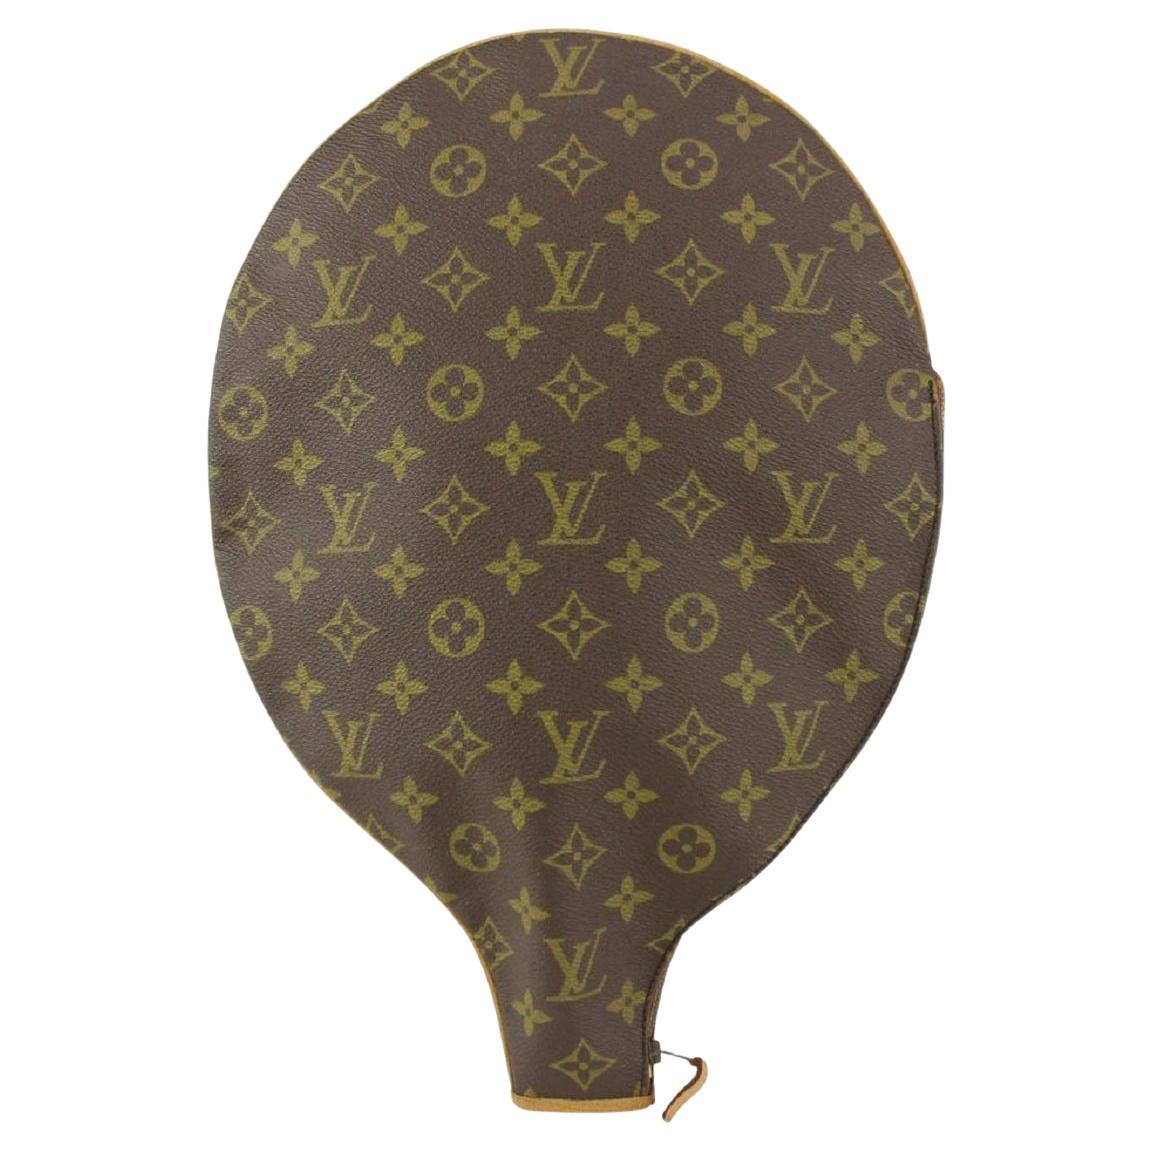 Louis Vuitton Monogram Racquet Cover Tennis Squash Racket 195lvs713